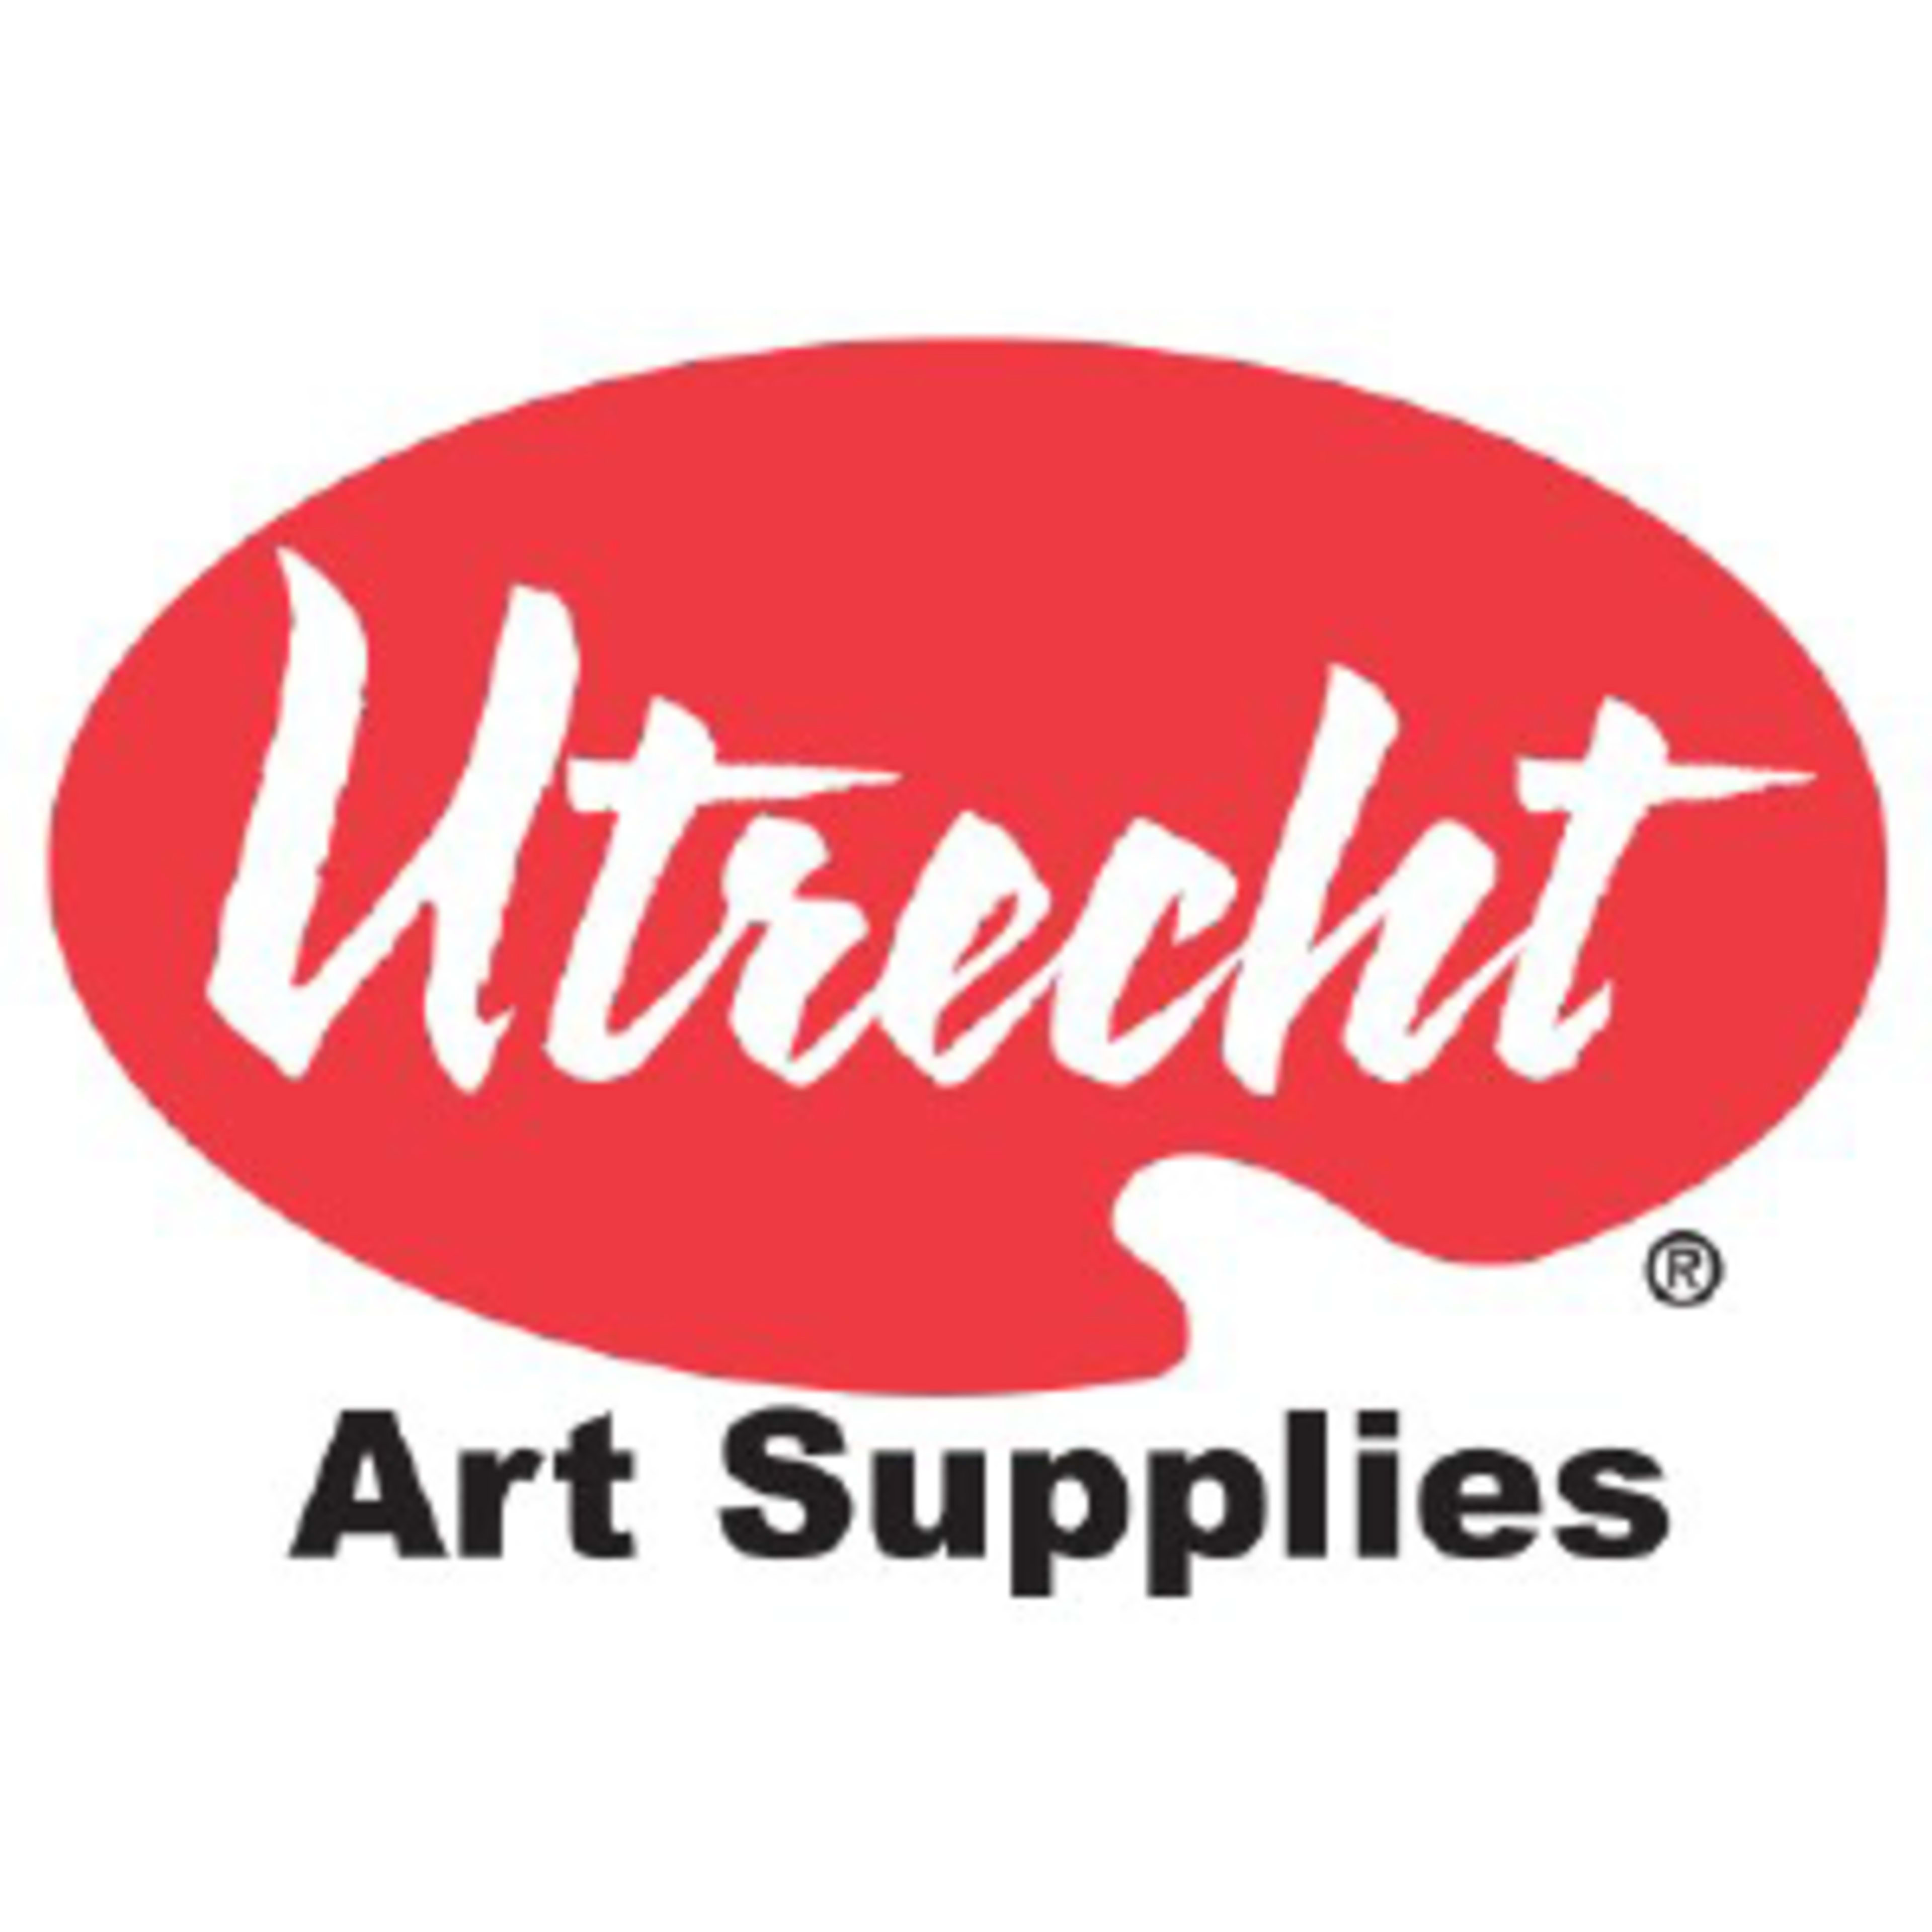 Utrecht Art Supplies Code